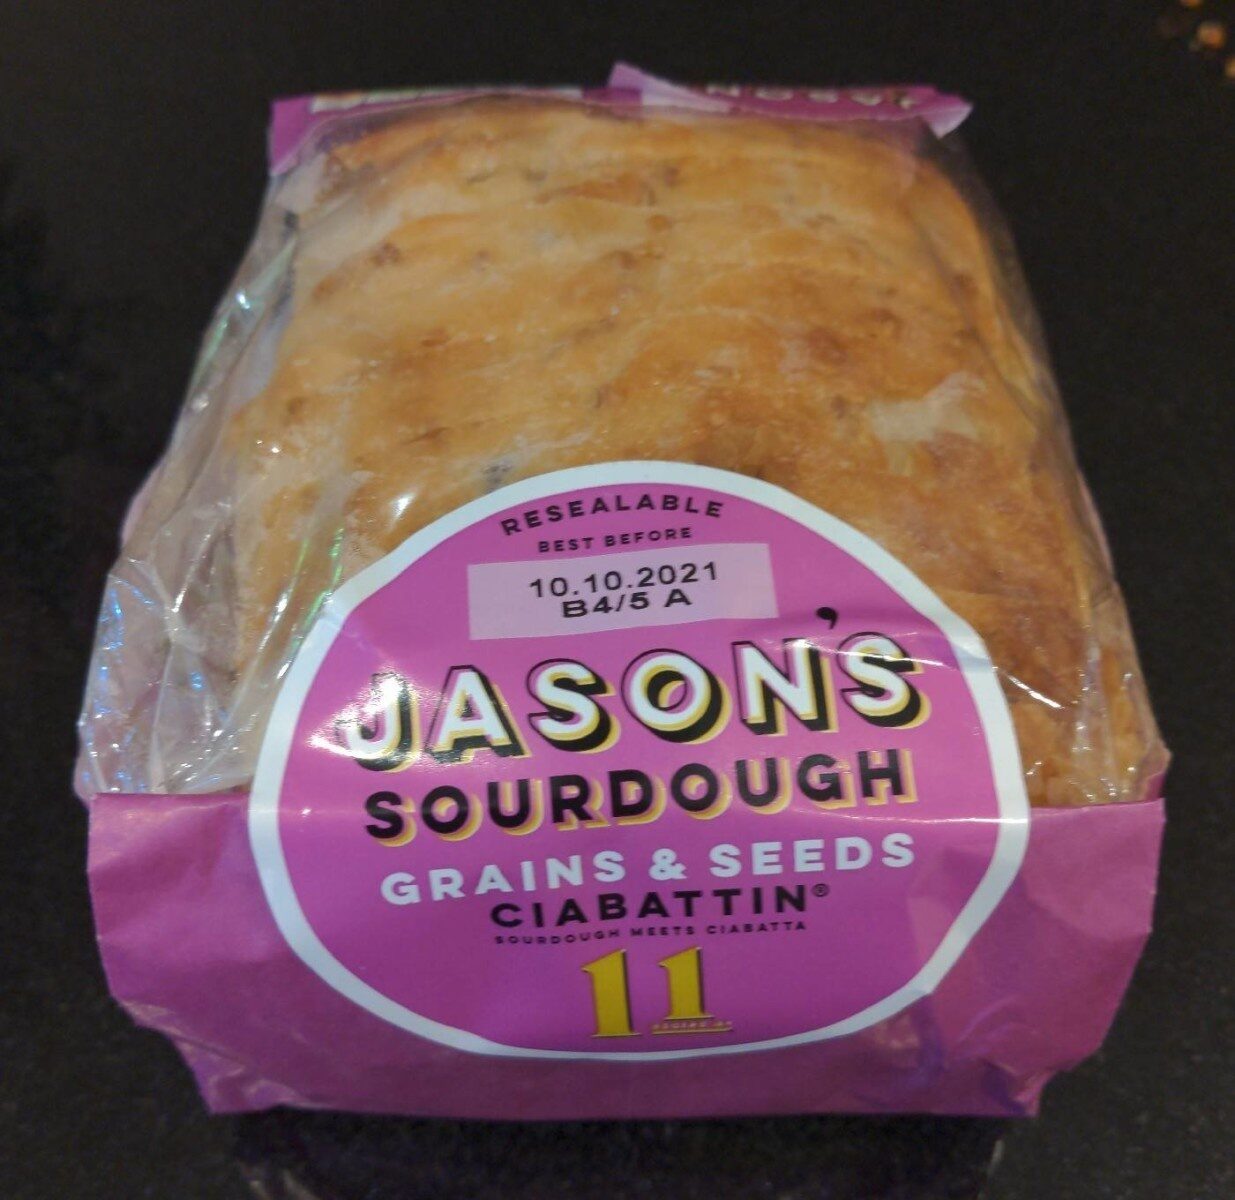 Jason's sourdough grains & seeds - Product